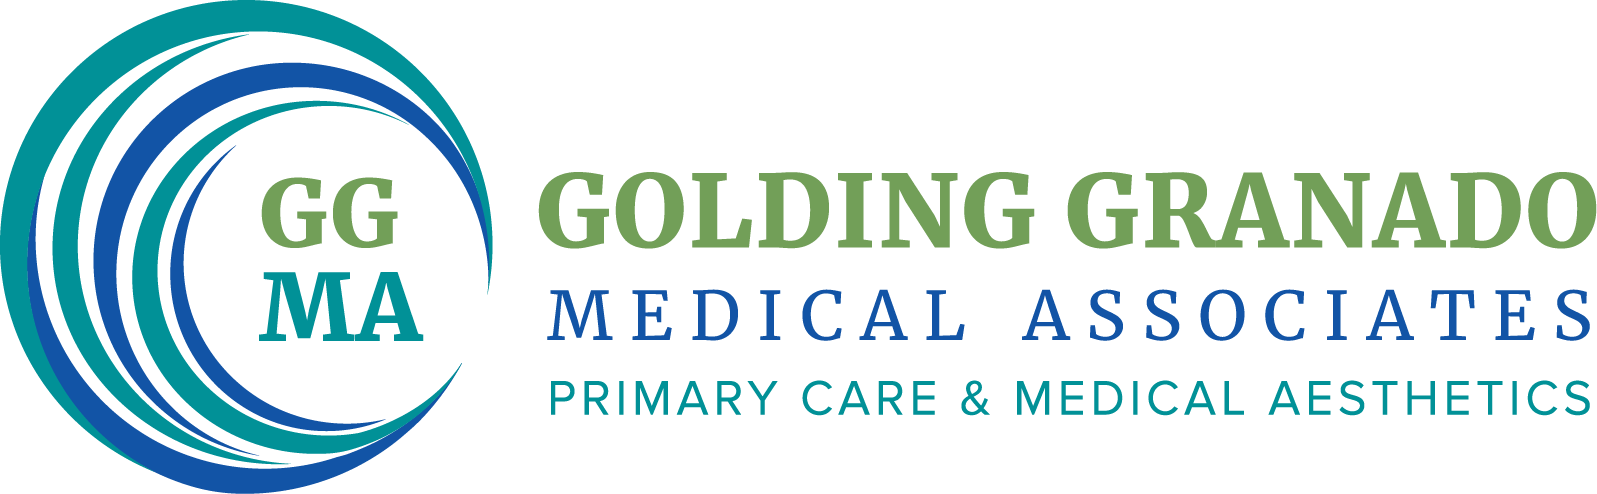 Golding Granado Medical Associates